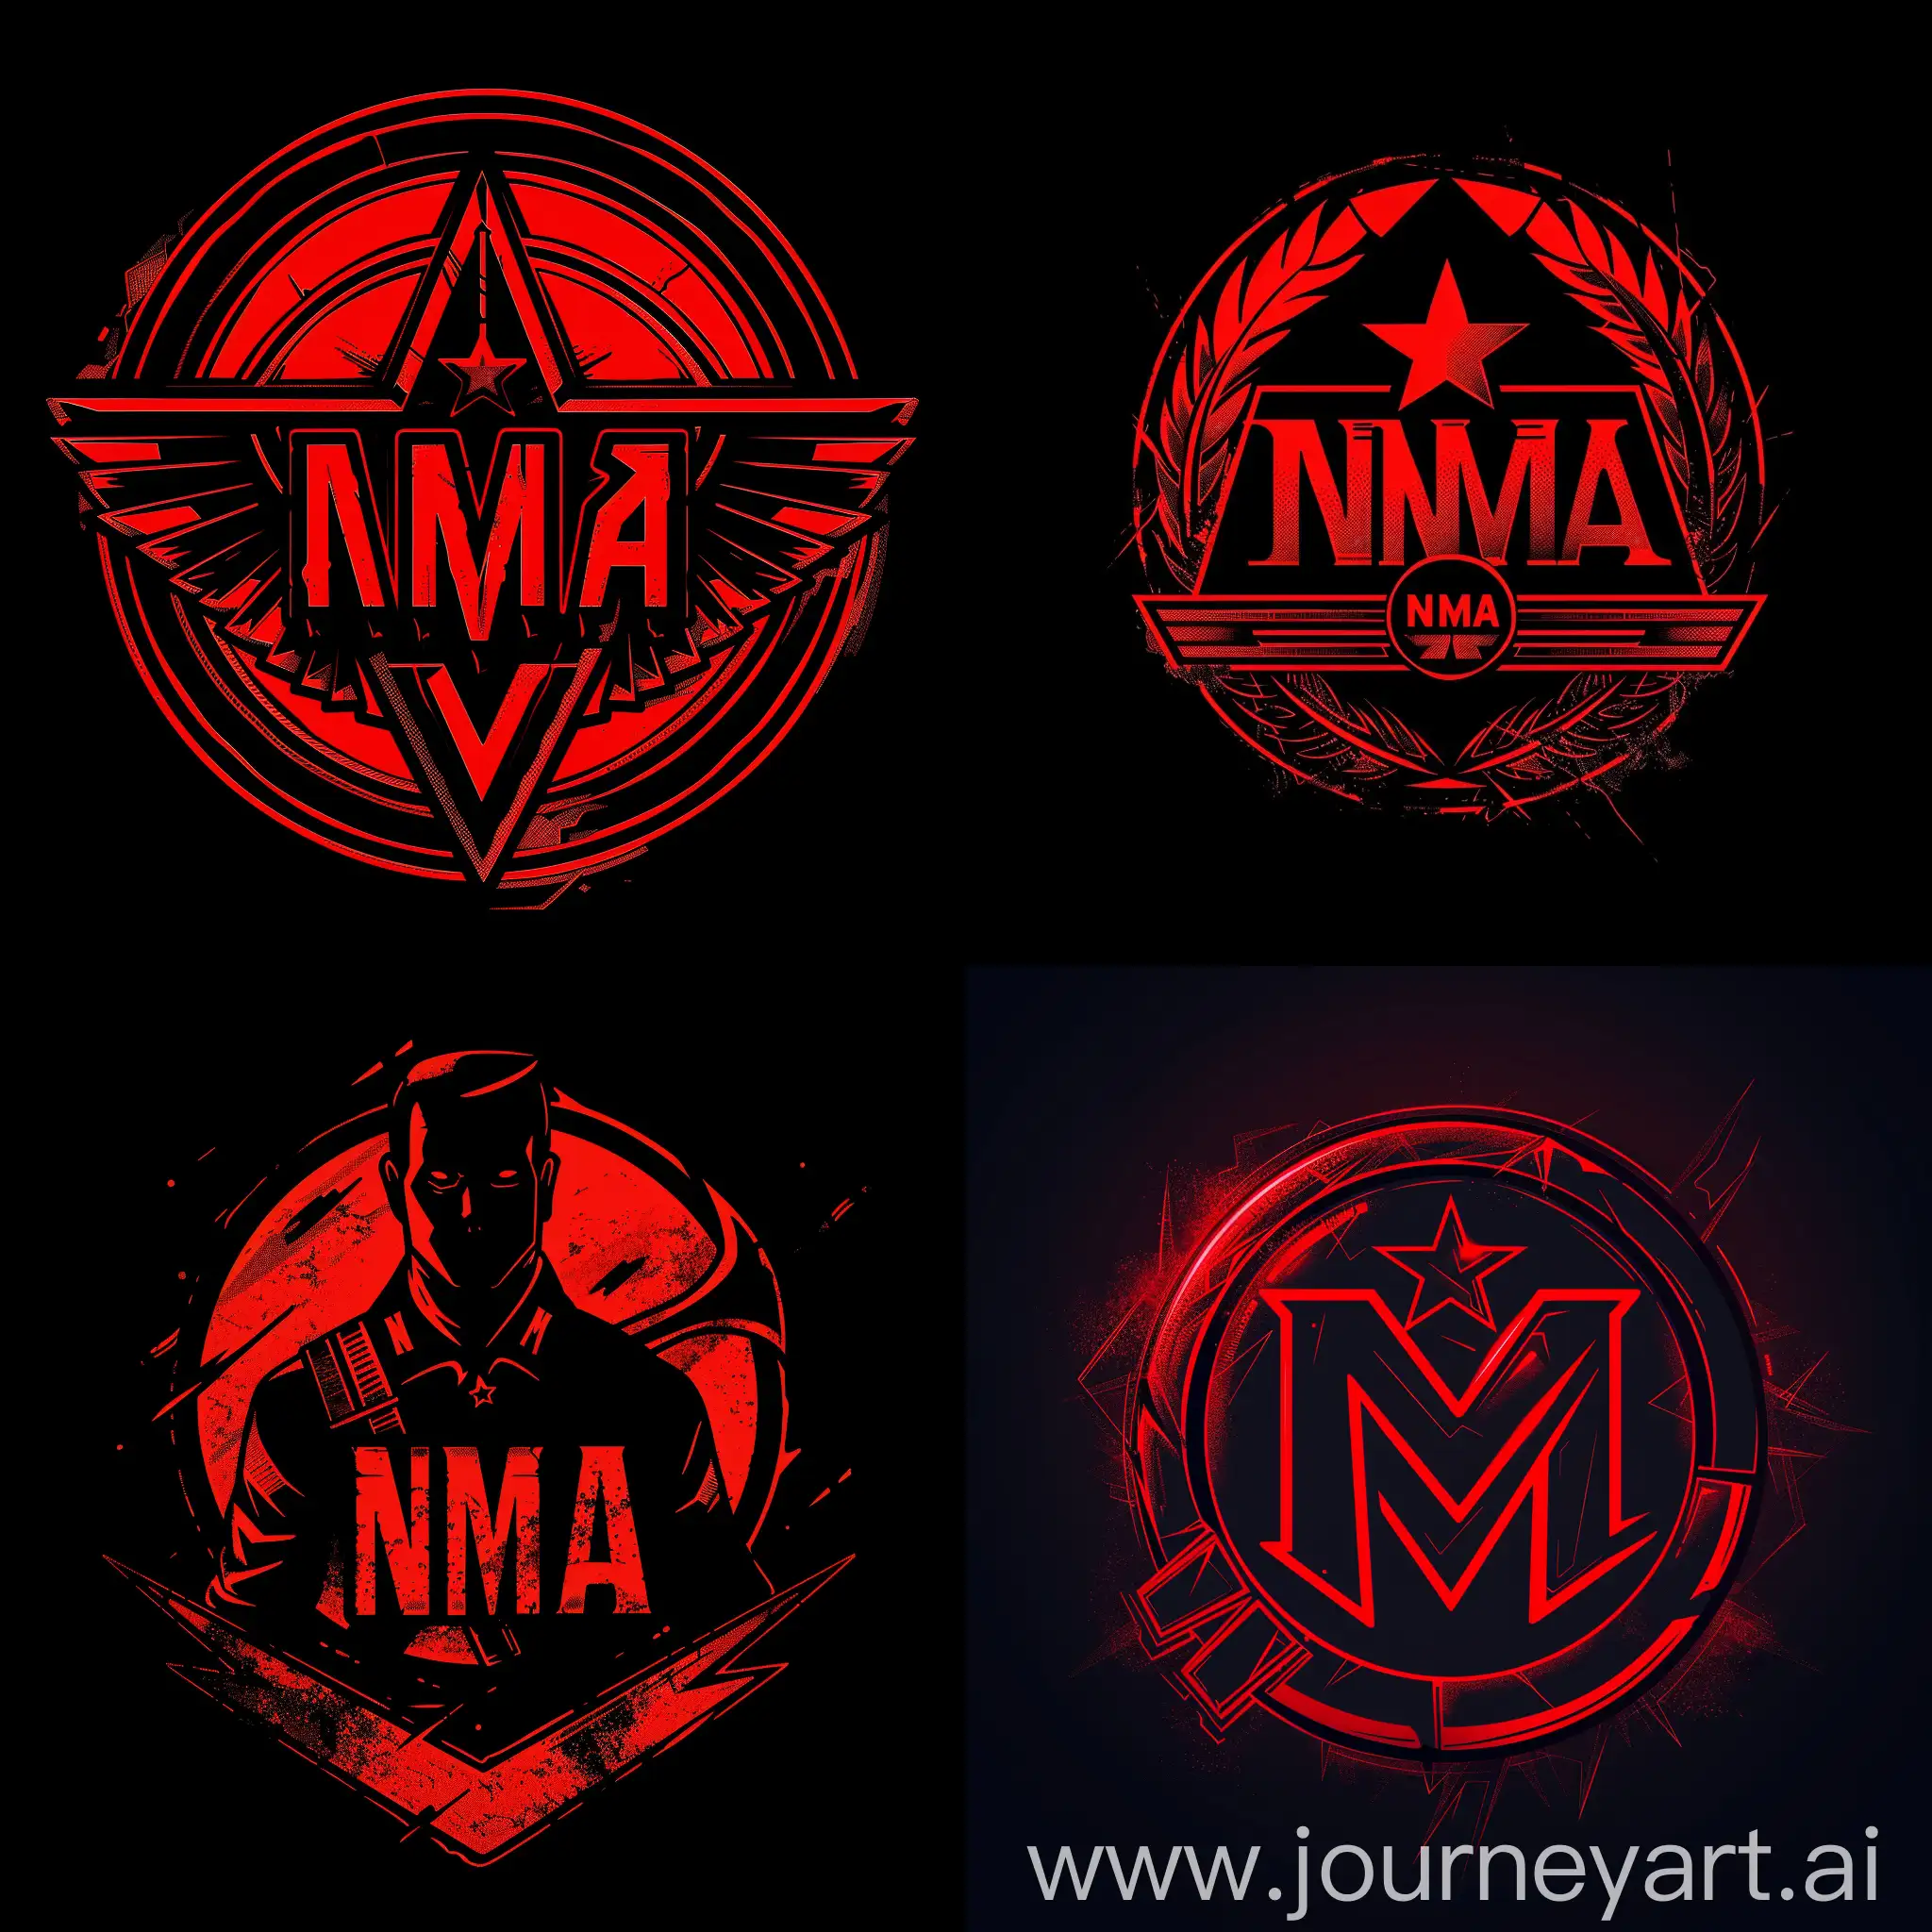 Коммунистический Логотип "НМА" в красных и черных цветах похожий на герб штрассеристов 